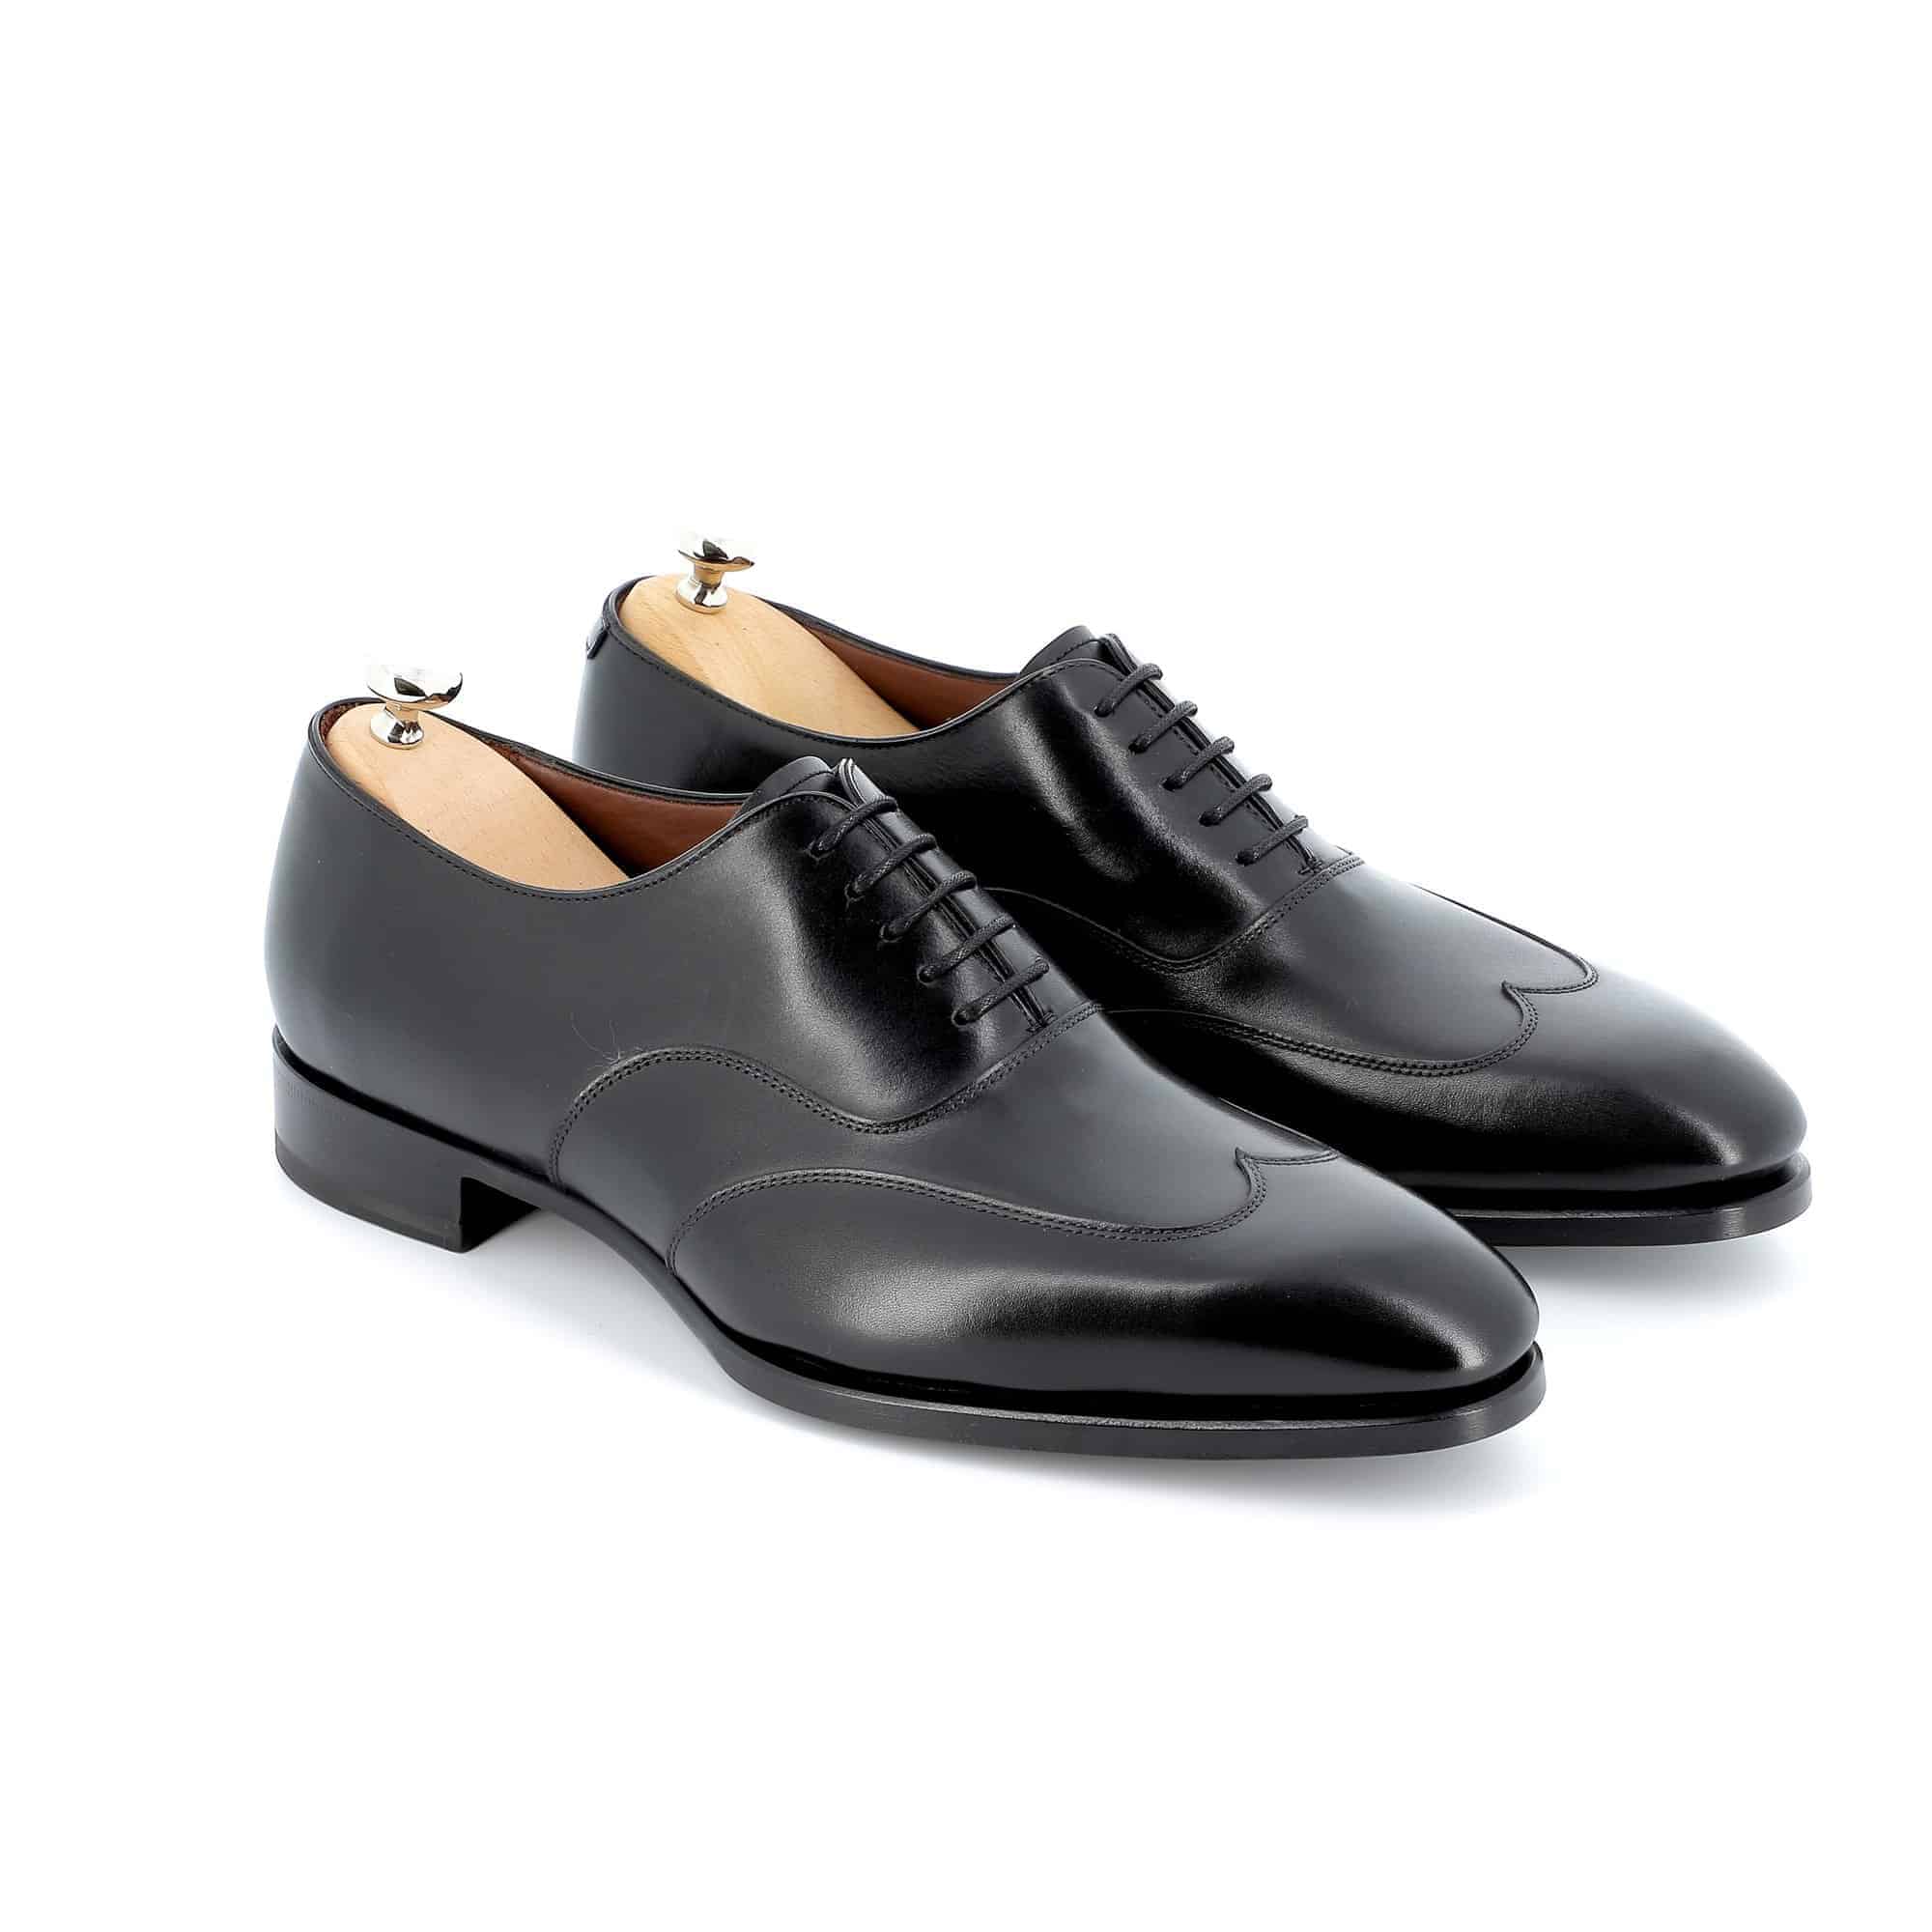 Chaussures Richelieu Arthur cuir noir semelles cuir